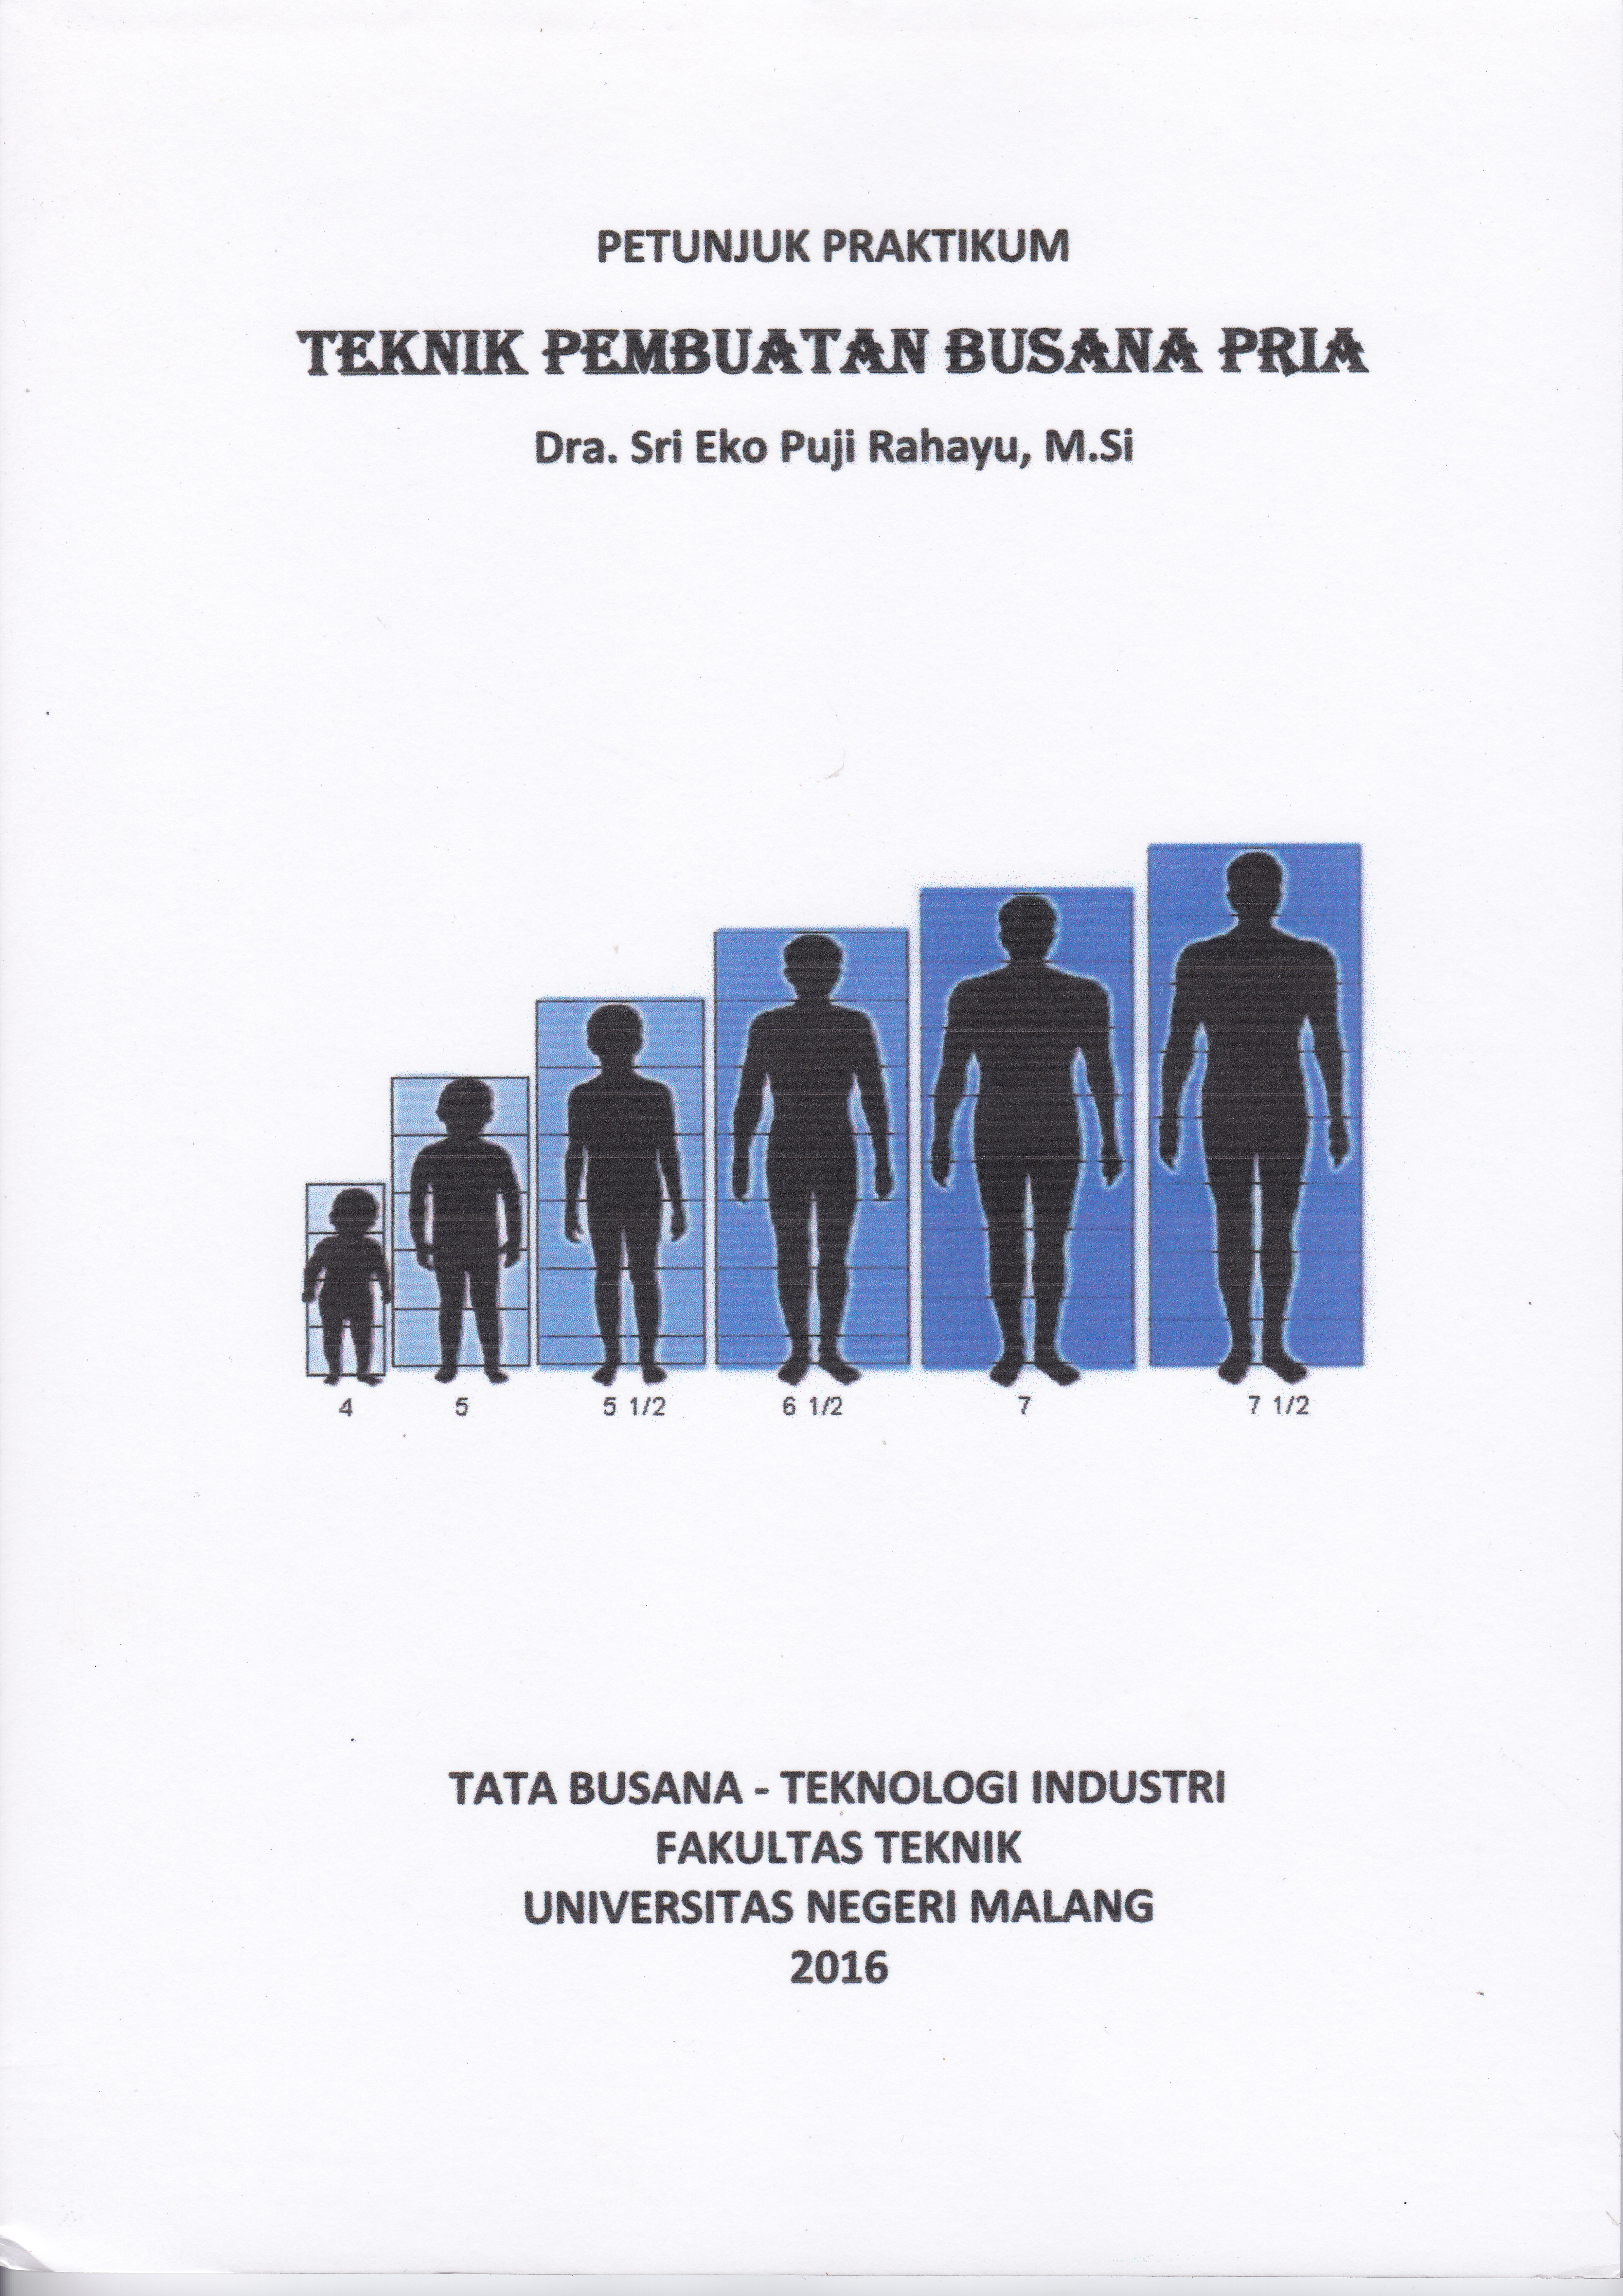 Buku Petunjuk Praktikum “Teknik Pembuatan Busana Pria” oleh Dra. Sri Eko Puji Rahayu, M.Si.